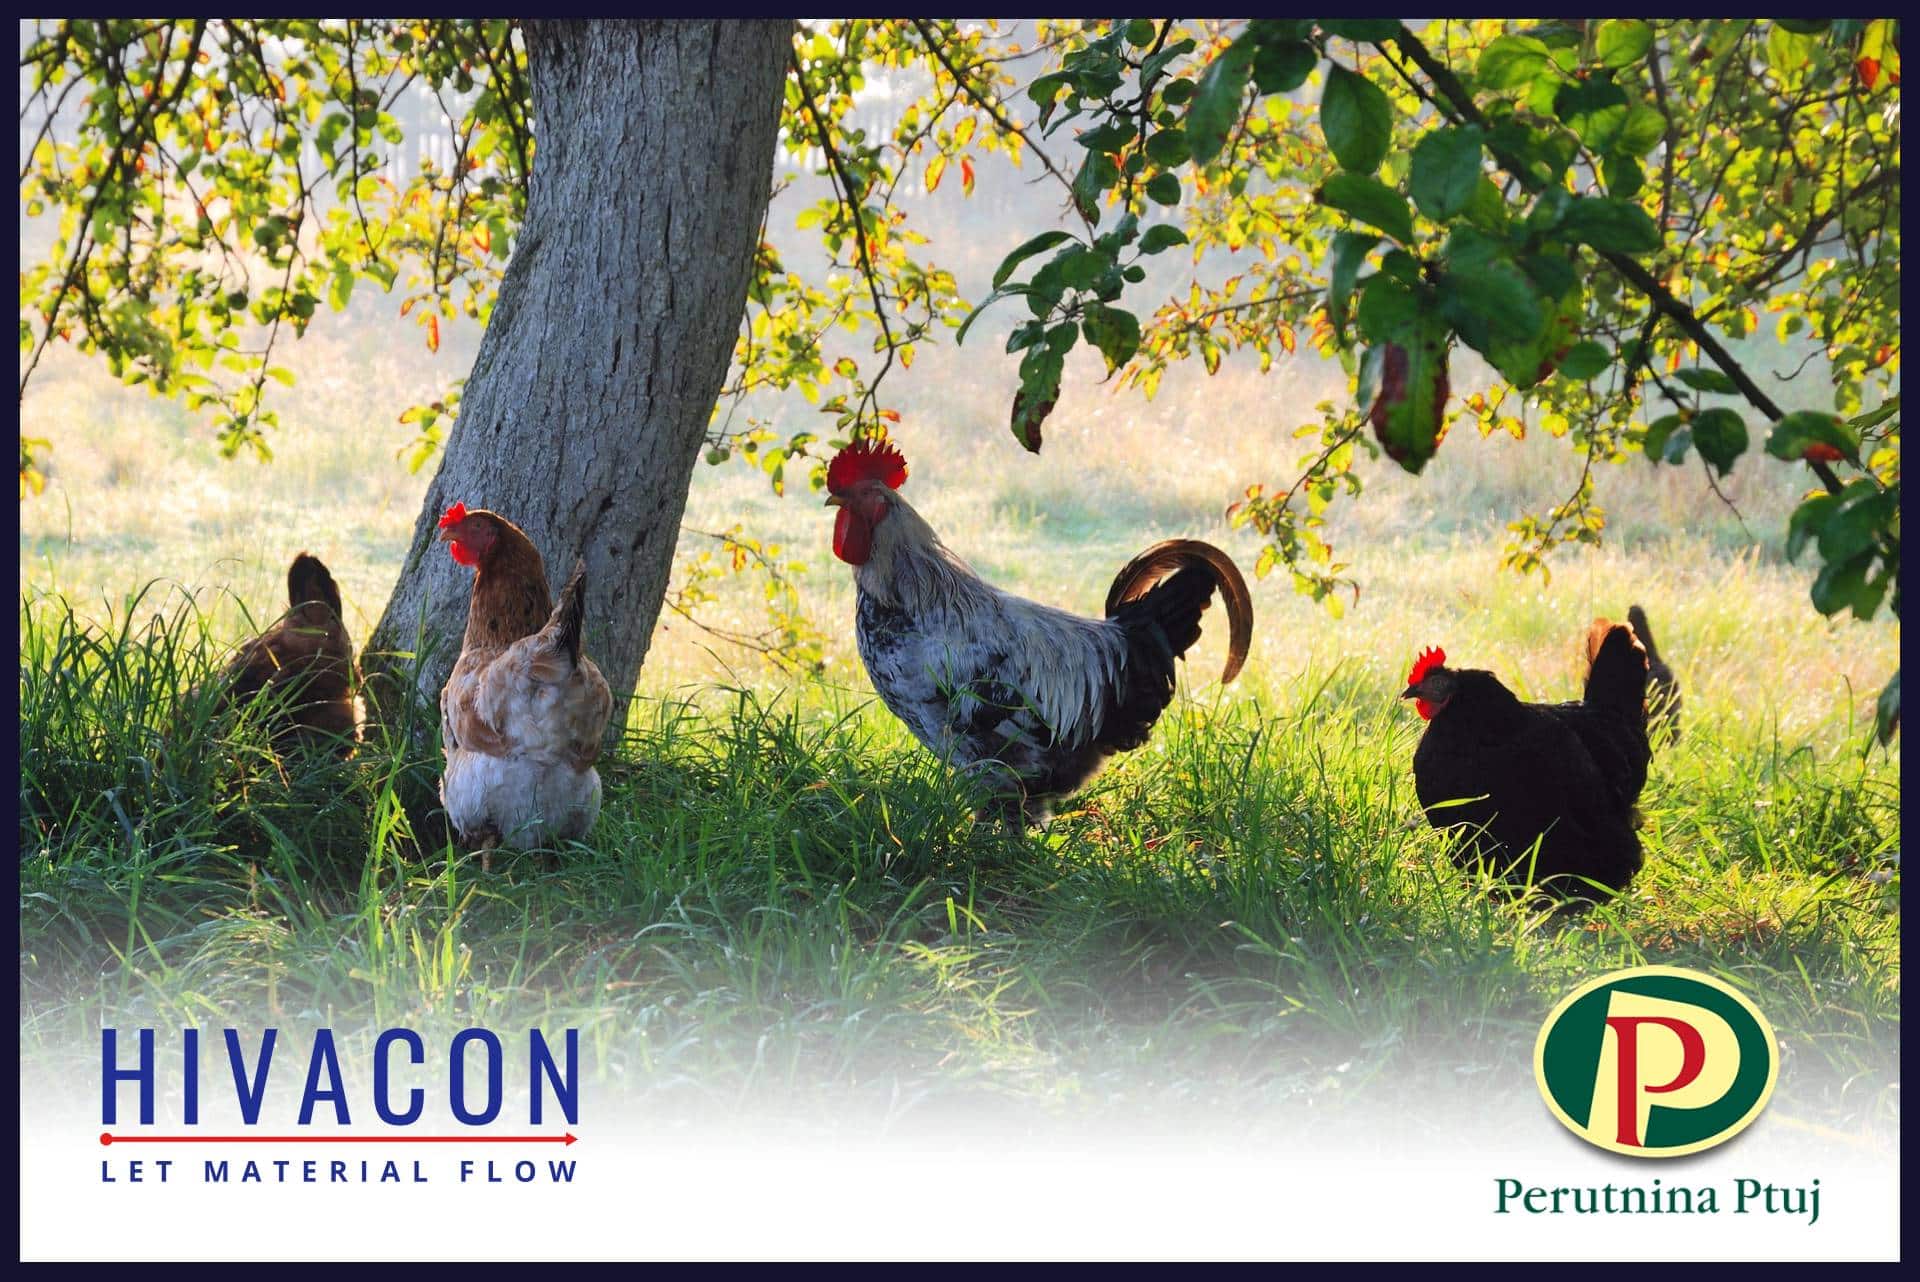 Hivacon partners with Perutnina Ptuj | Hivacon News